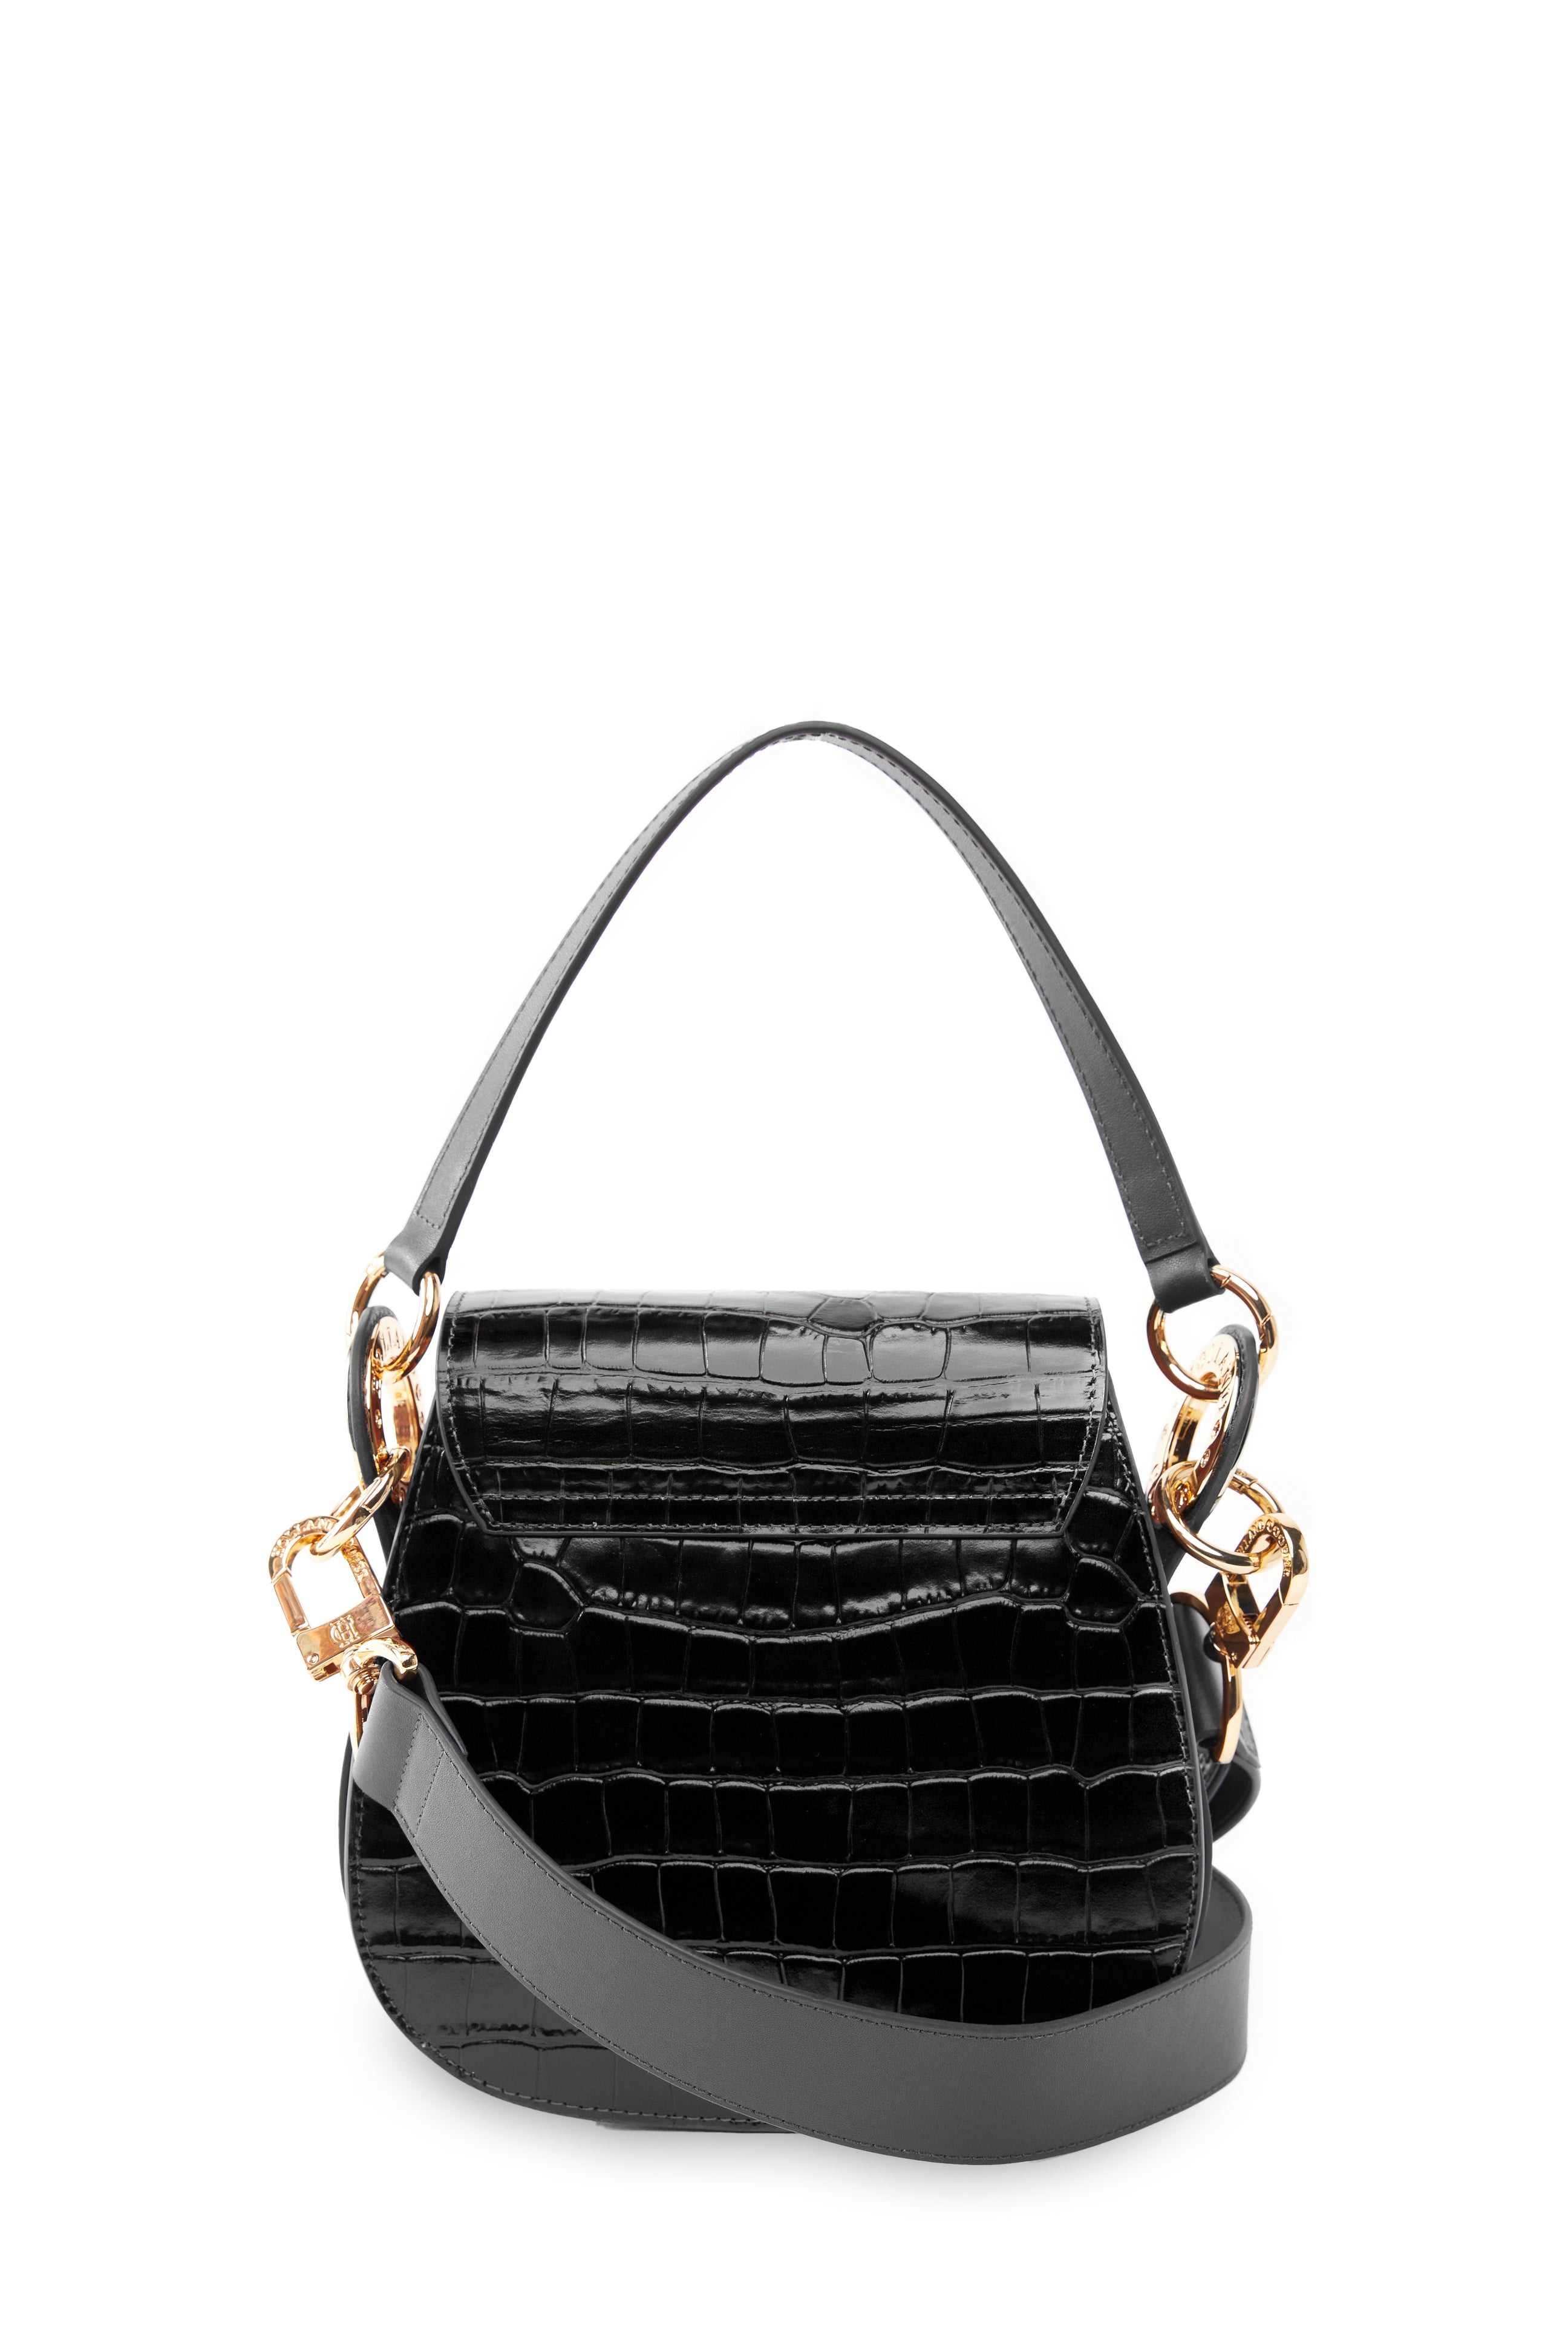 Chelsea Saddle Bag (Black Croc) – Holland Cooper